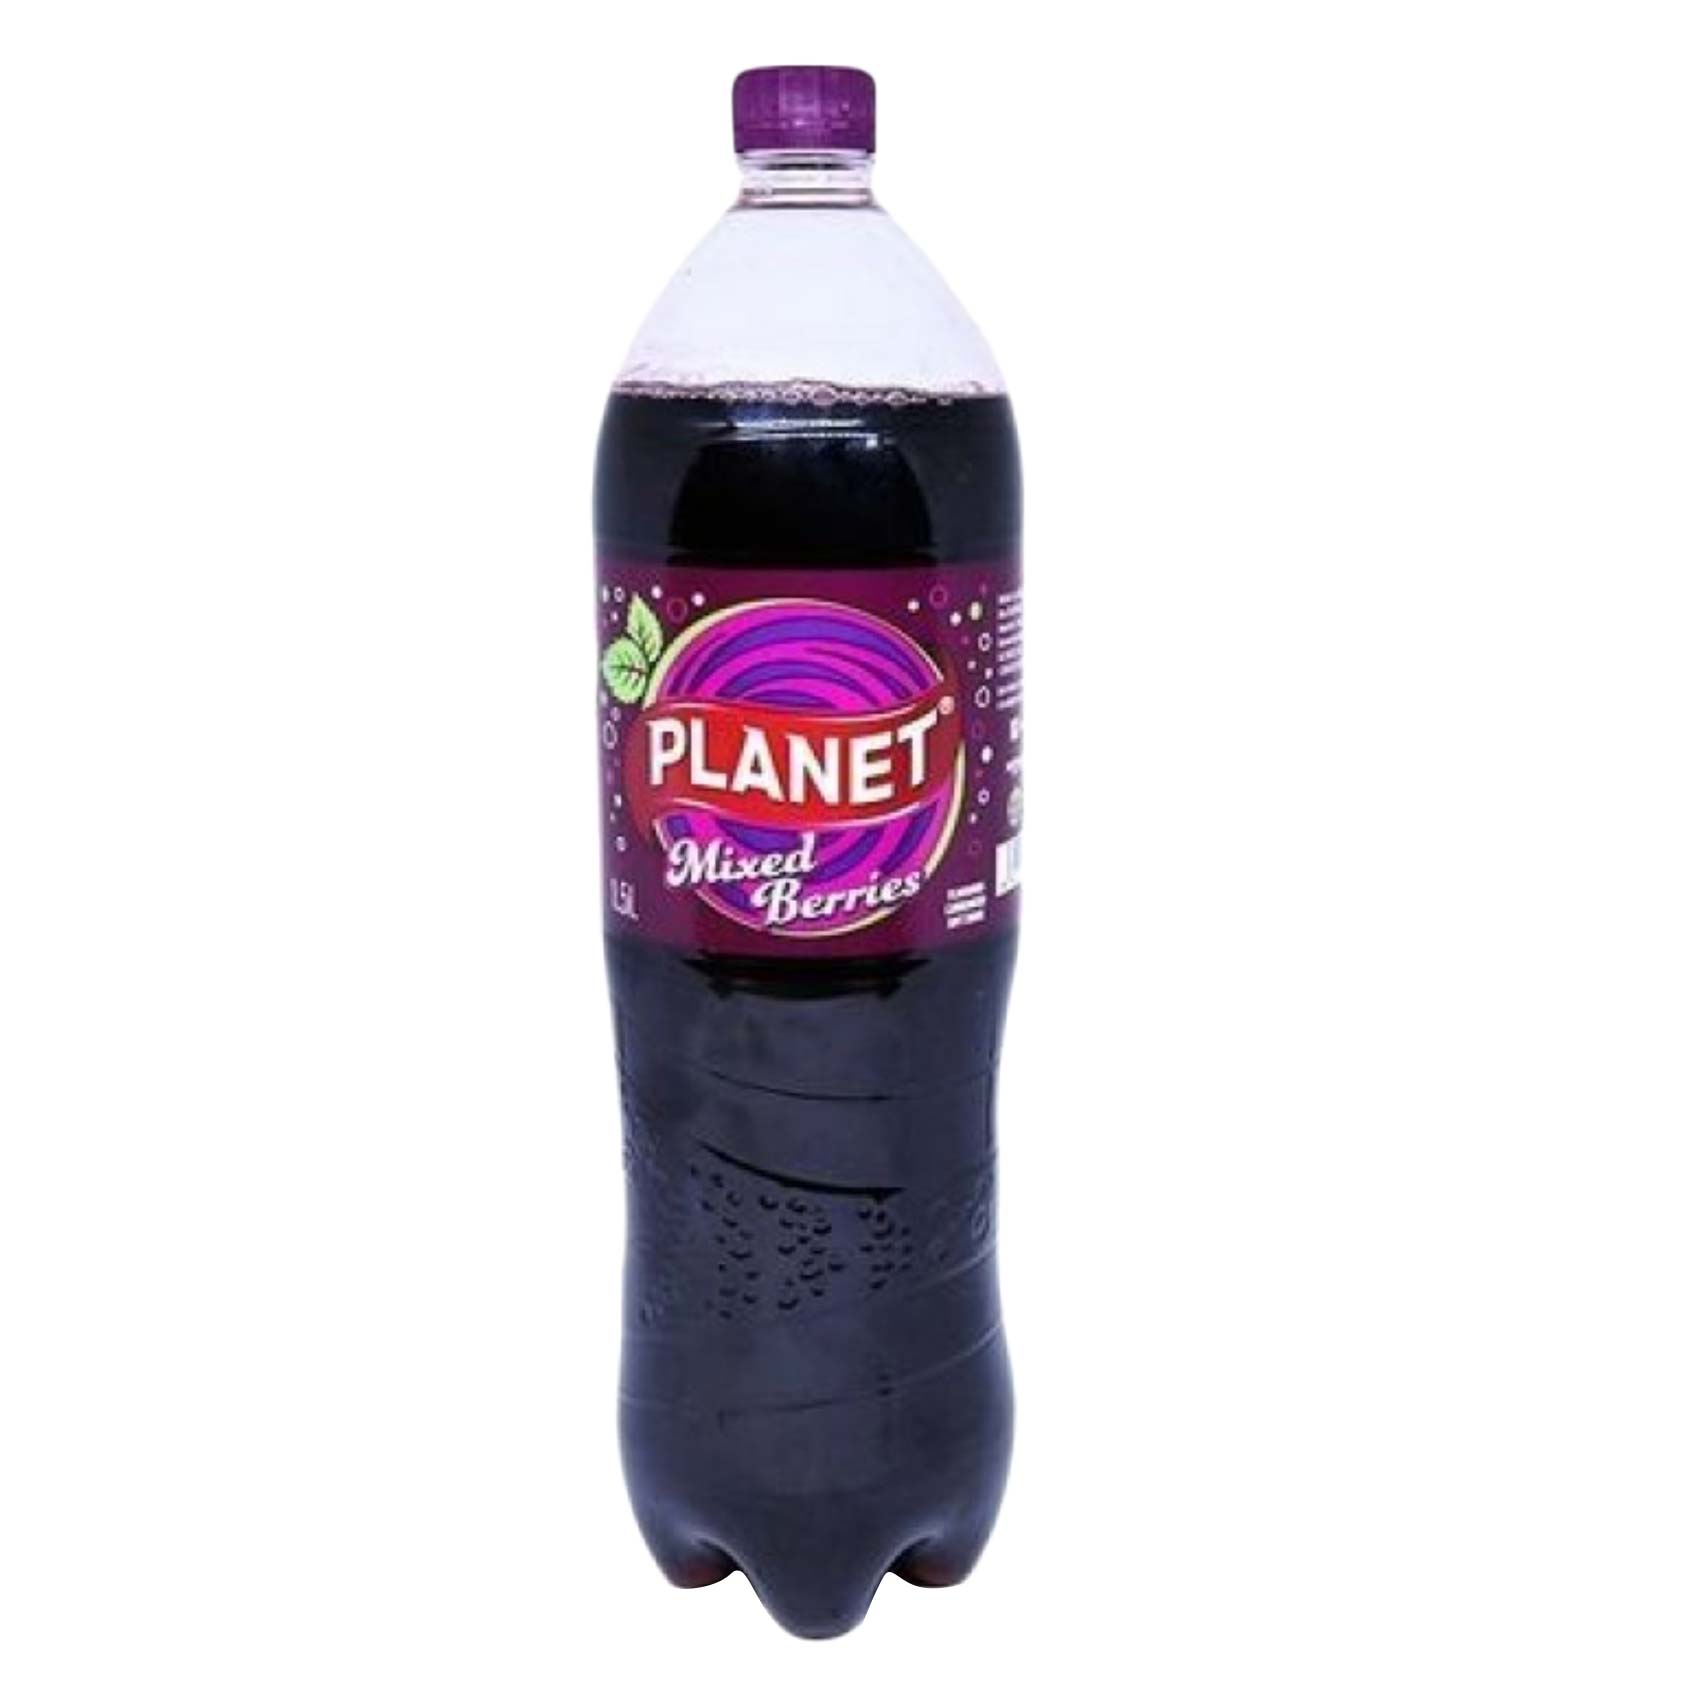 Planet Mixed Berries Soda 1.5L